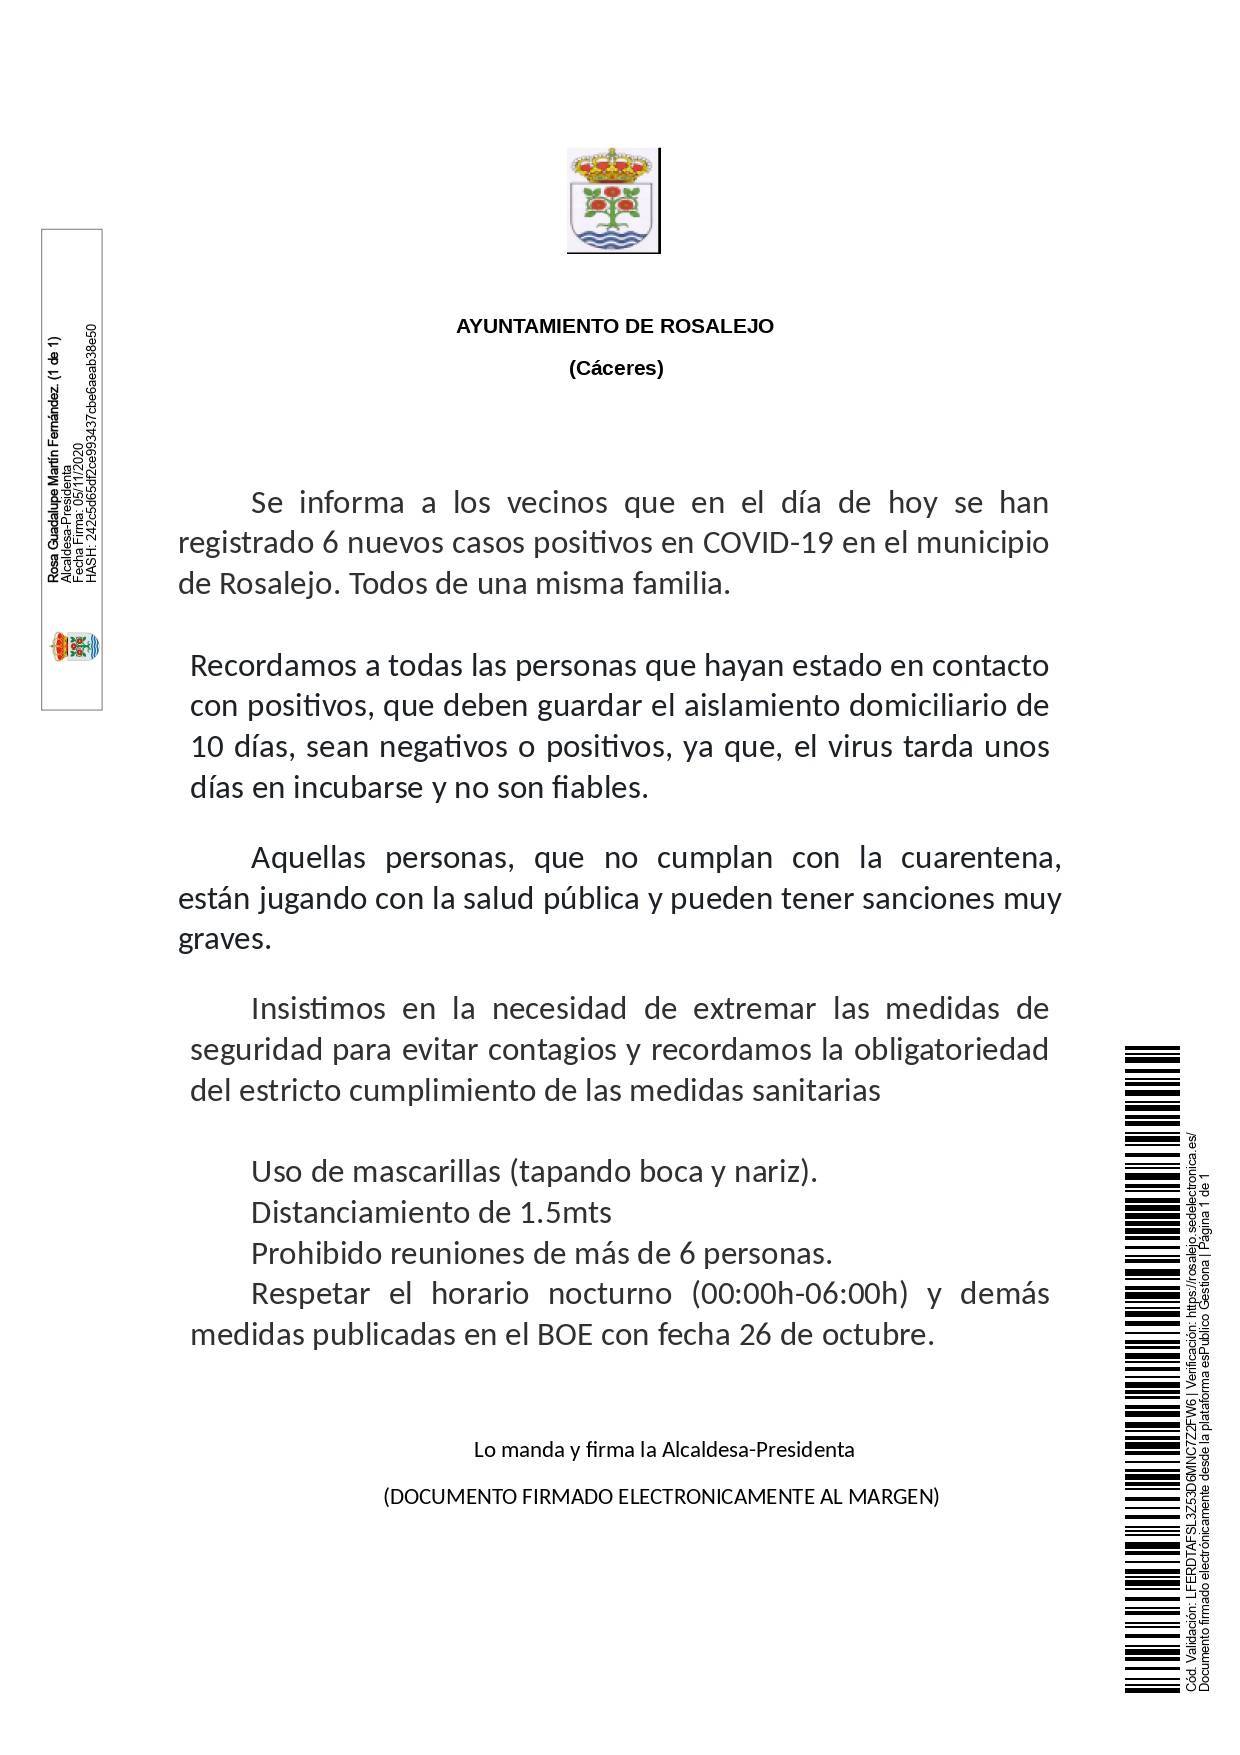 6 nuevos casos positivos de COVID-19 (noviembre 2020) - Rosalejo (Cáceres)